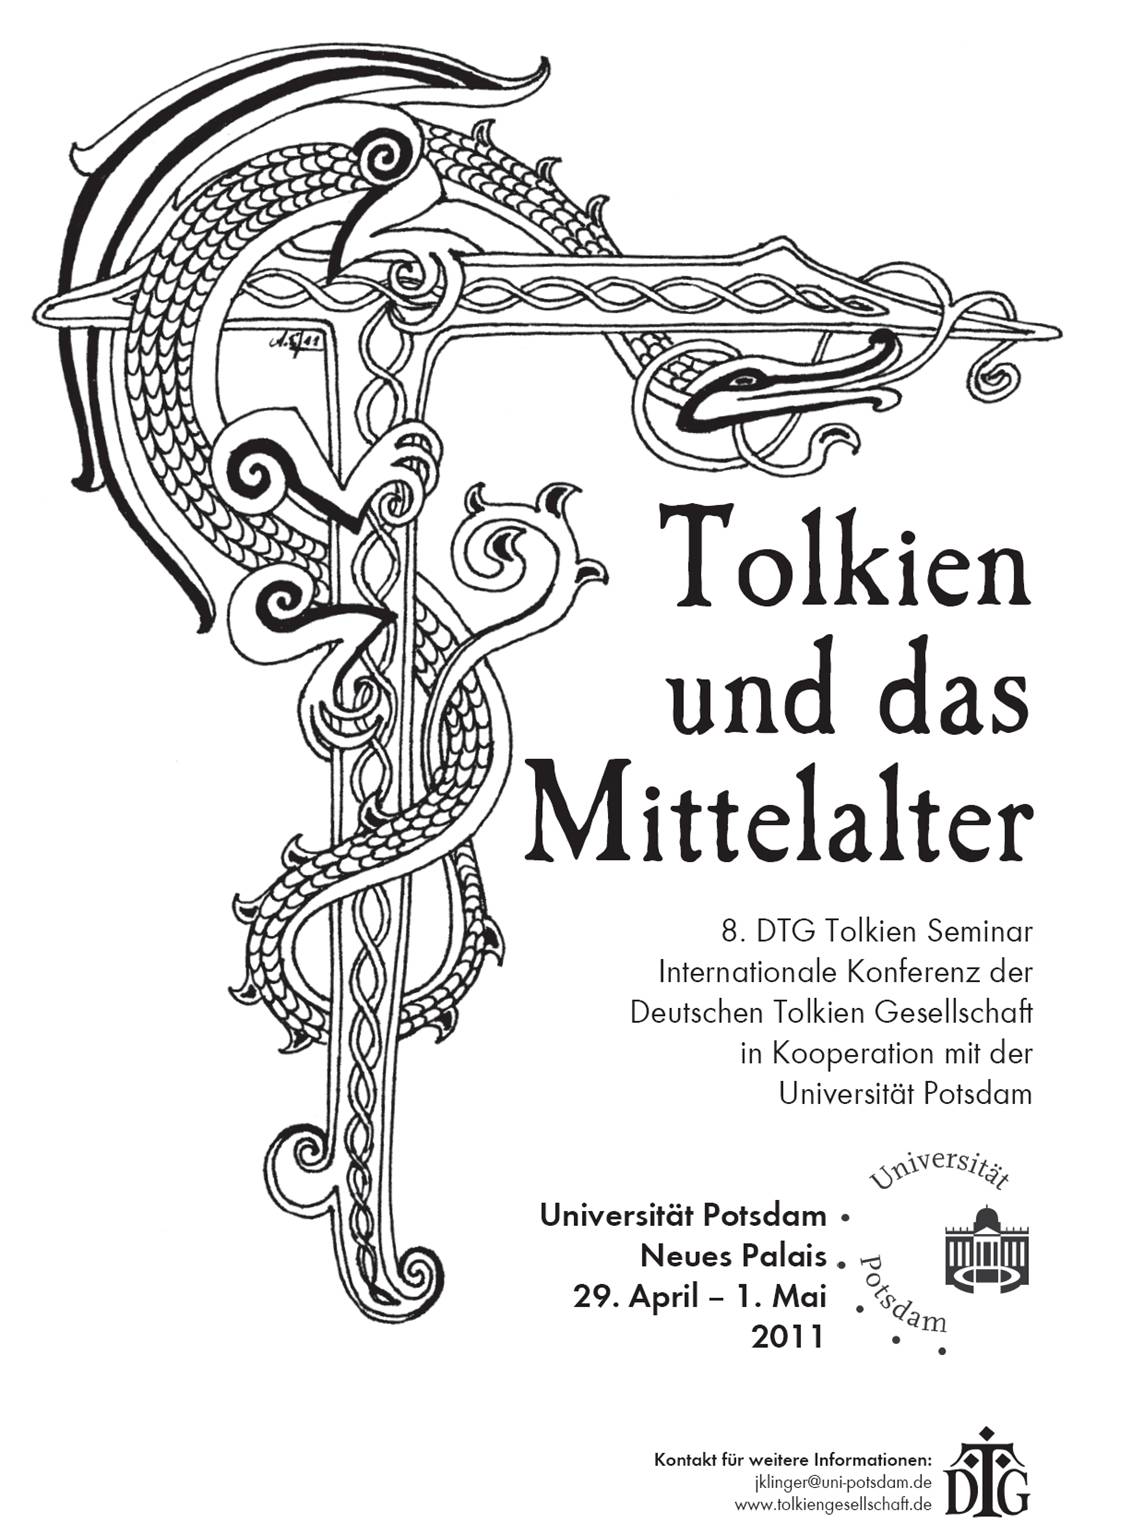 Plakat zum Tolkien Seminar 2011